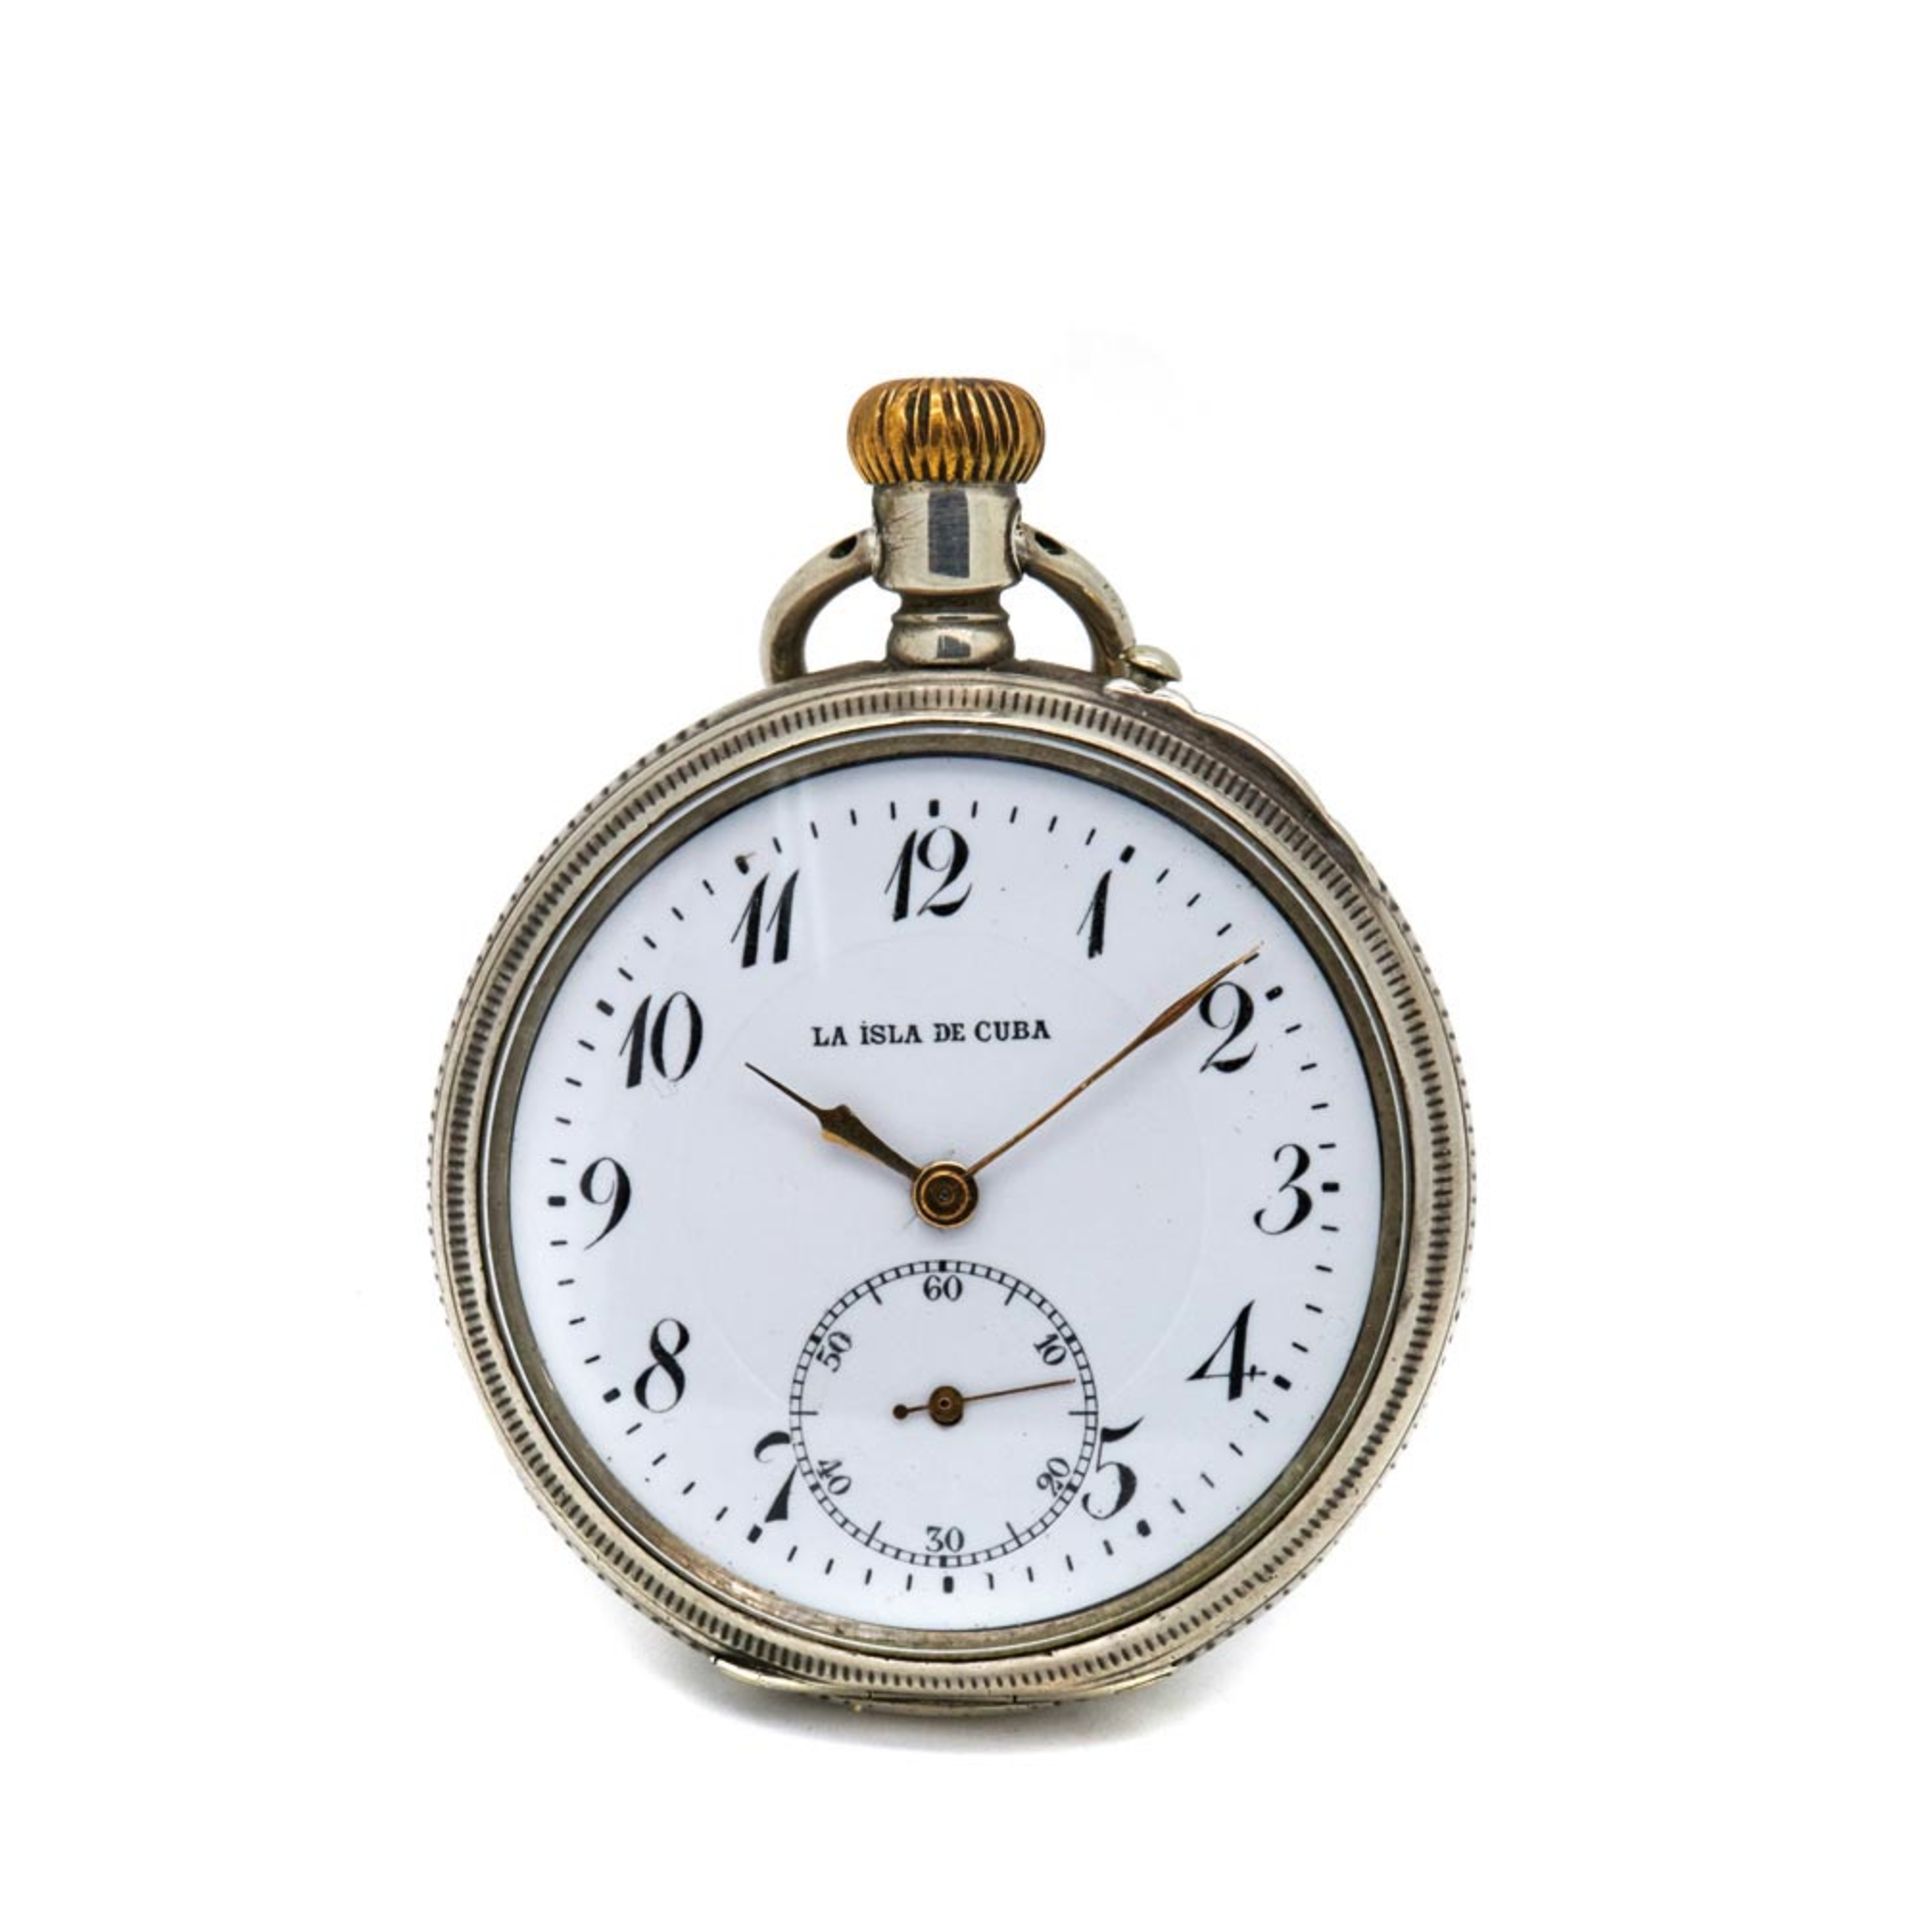 Reloj de bolsillo lepine Paul Jeannot "La isla de Cuba". En plata. Esfera de porcelana con